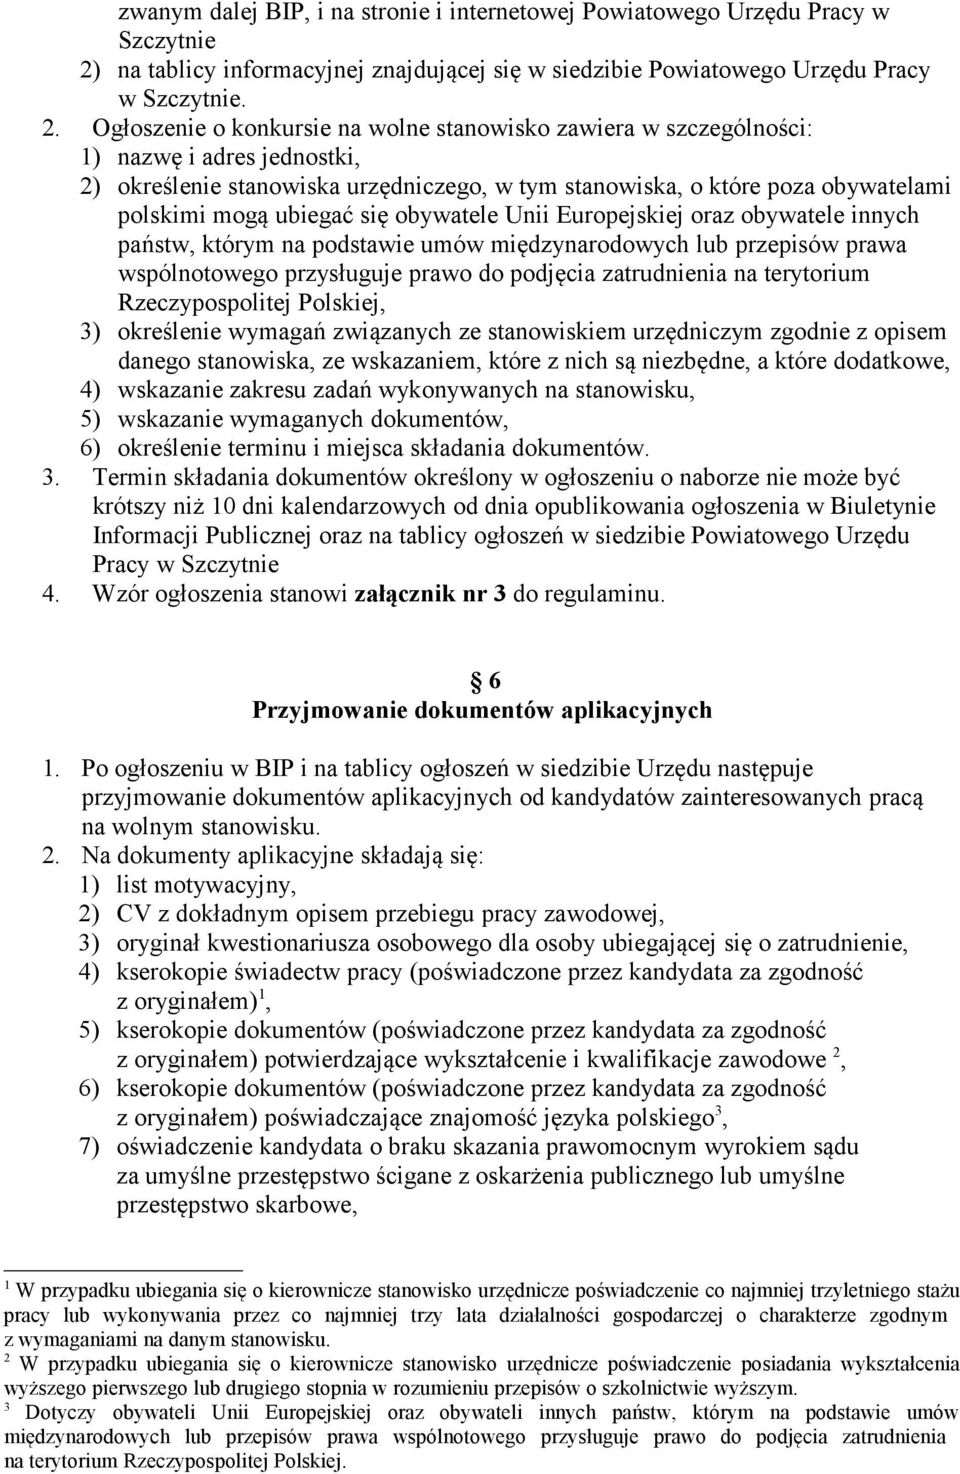 Ogłoszenie o konkursie na wolne stanowisko zawiera w szczególności: 1) nazwę i adres jednostki, 2) określenie stanowiska urzędniczego, w tym stanowiska, o które poza obywatelami polskimi mogą ubiegać